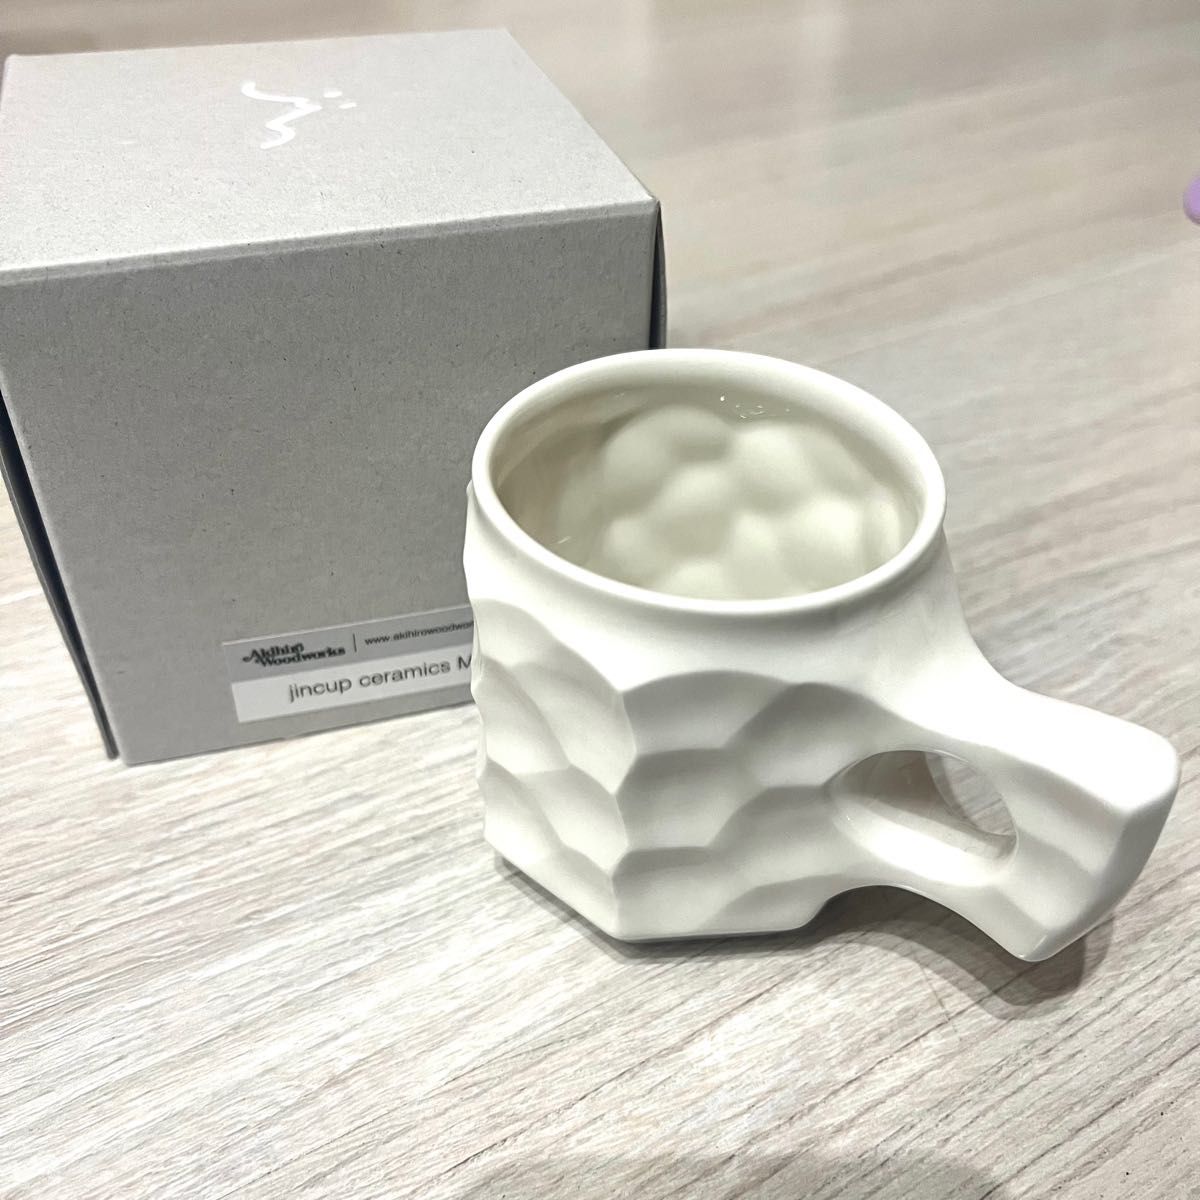 アキヒロウッドワークス シン ジンカップ M jincup ceramics-